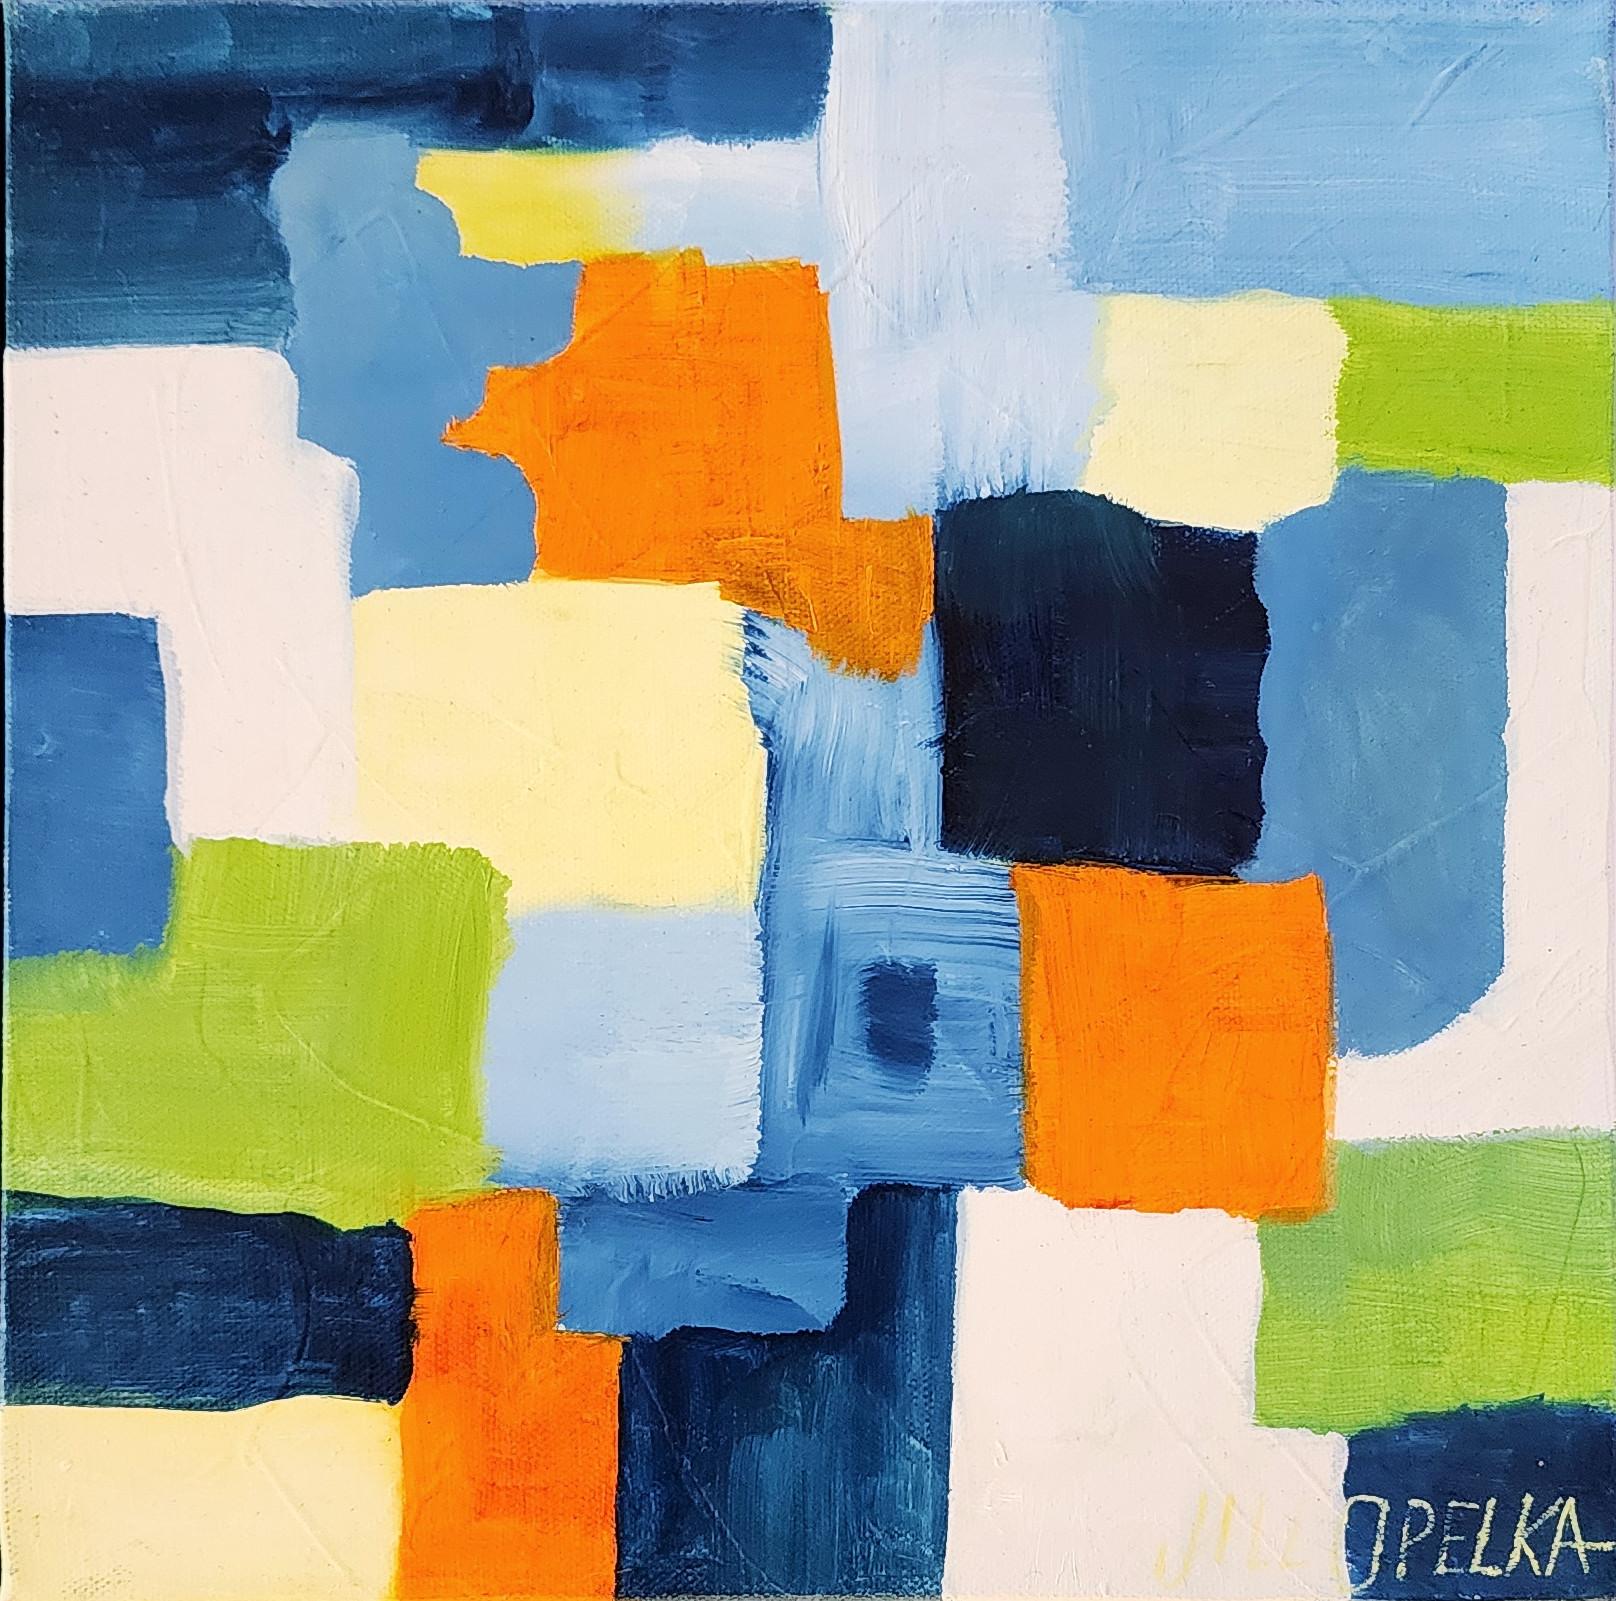 Abstrakt I (Lebendig, Tiefblau, Marineblau, Grün, Orange, Gelb 25% AUS LISTENPREIS) – Painting von Jill Opelka